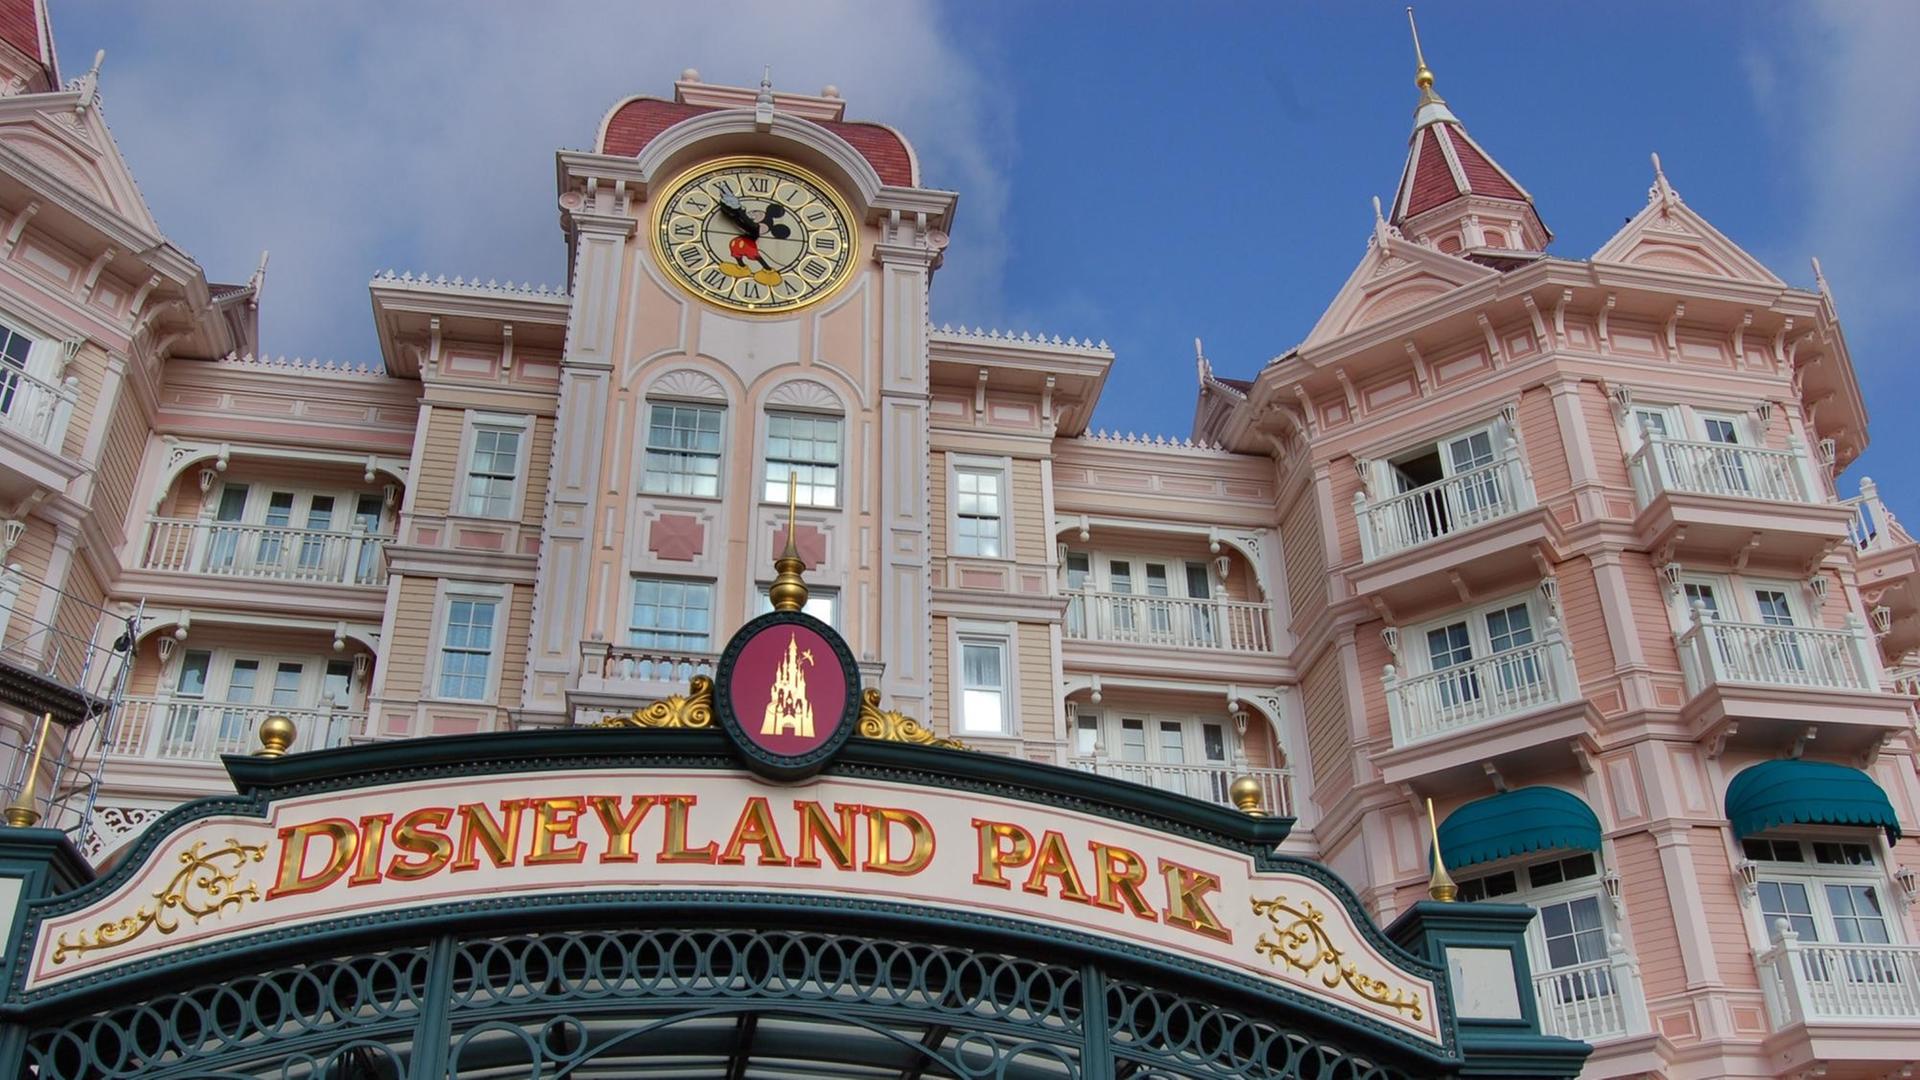 Eingang zum Disneyland-Park Paris mit dem Hotel Disneyland